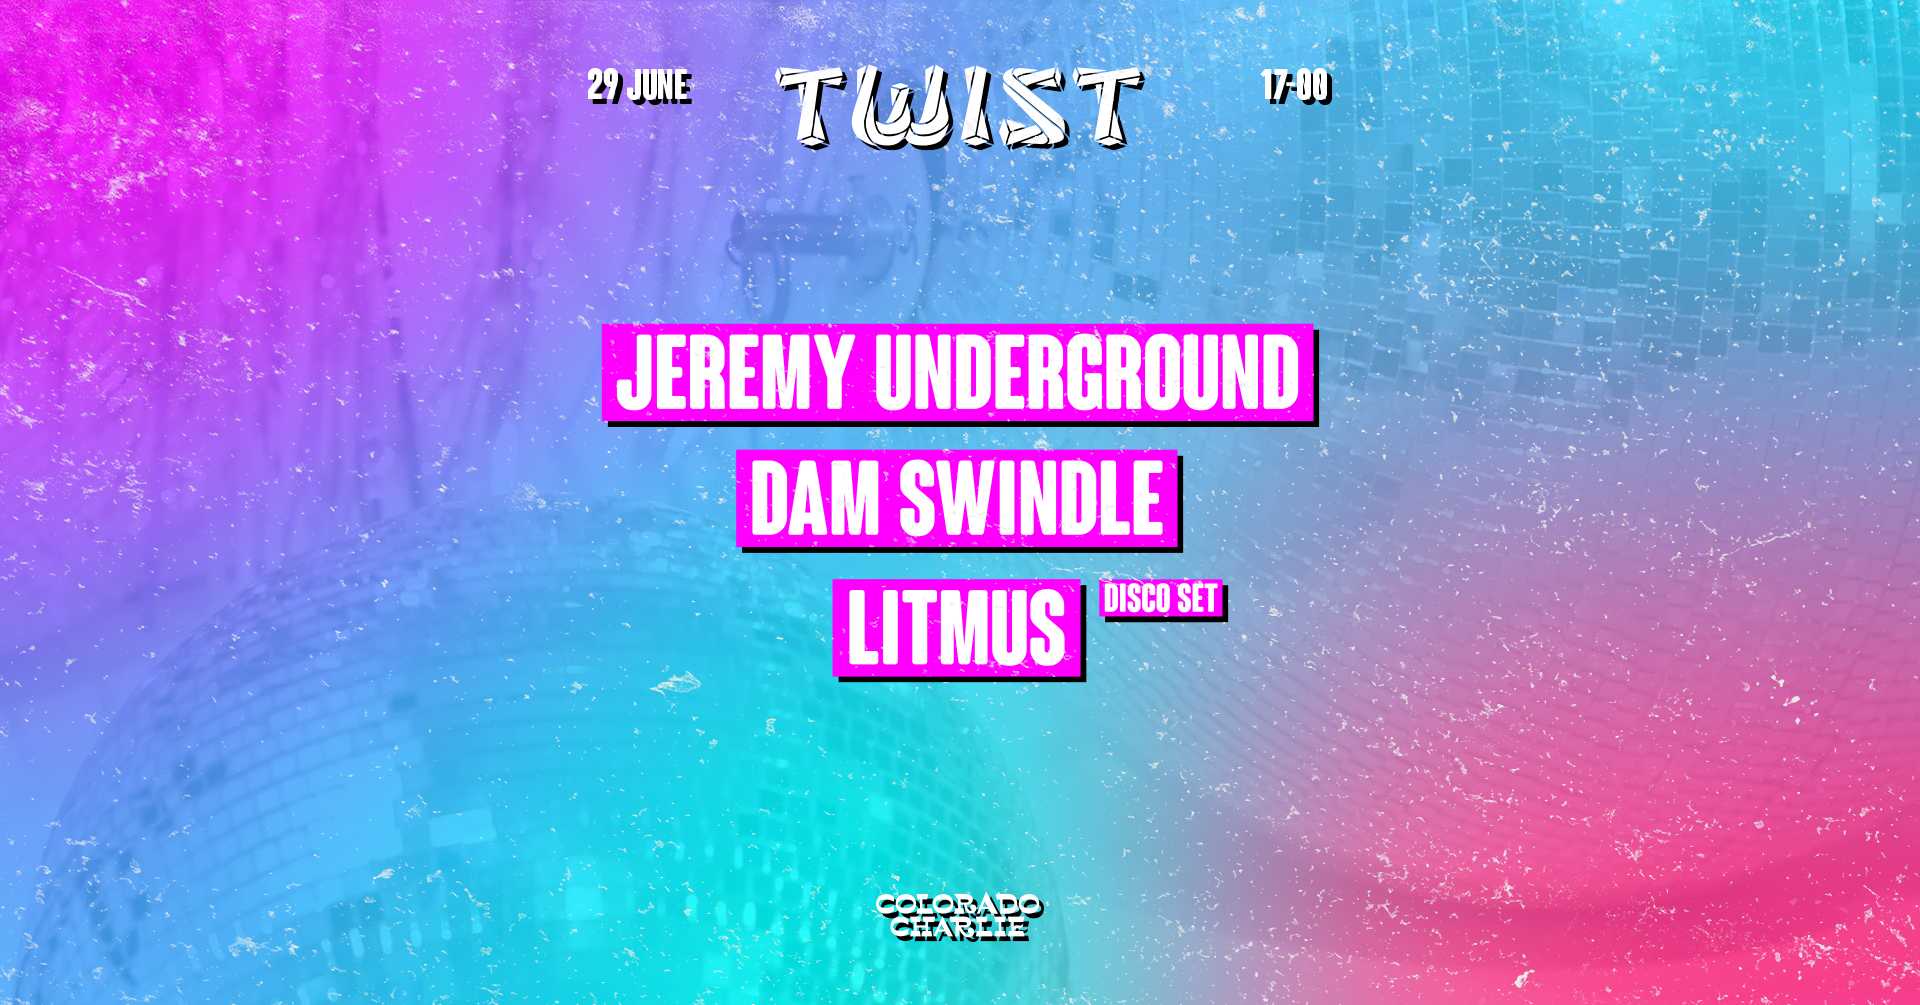 TWIST by Colorado Charlie with Jeremy Underground, Dam Swindle, Litmus (disco set) - Página frontal